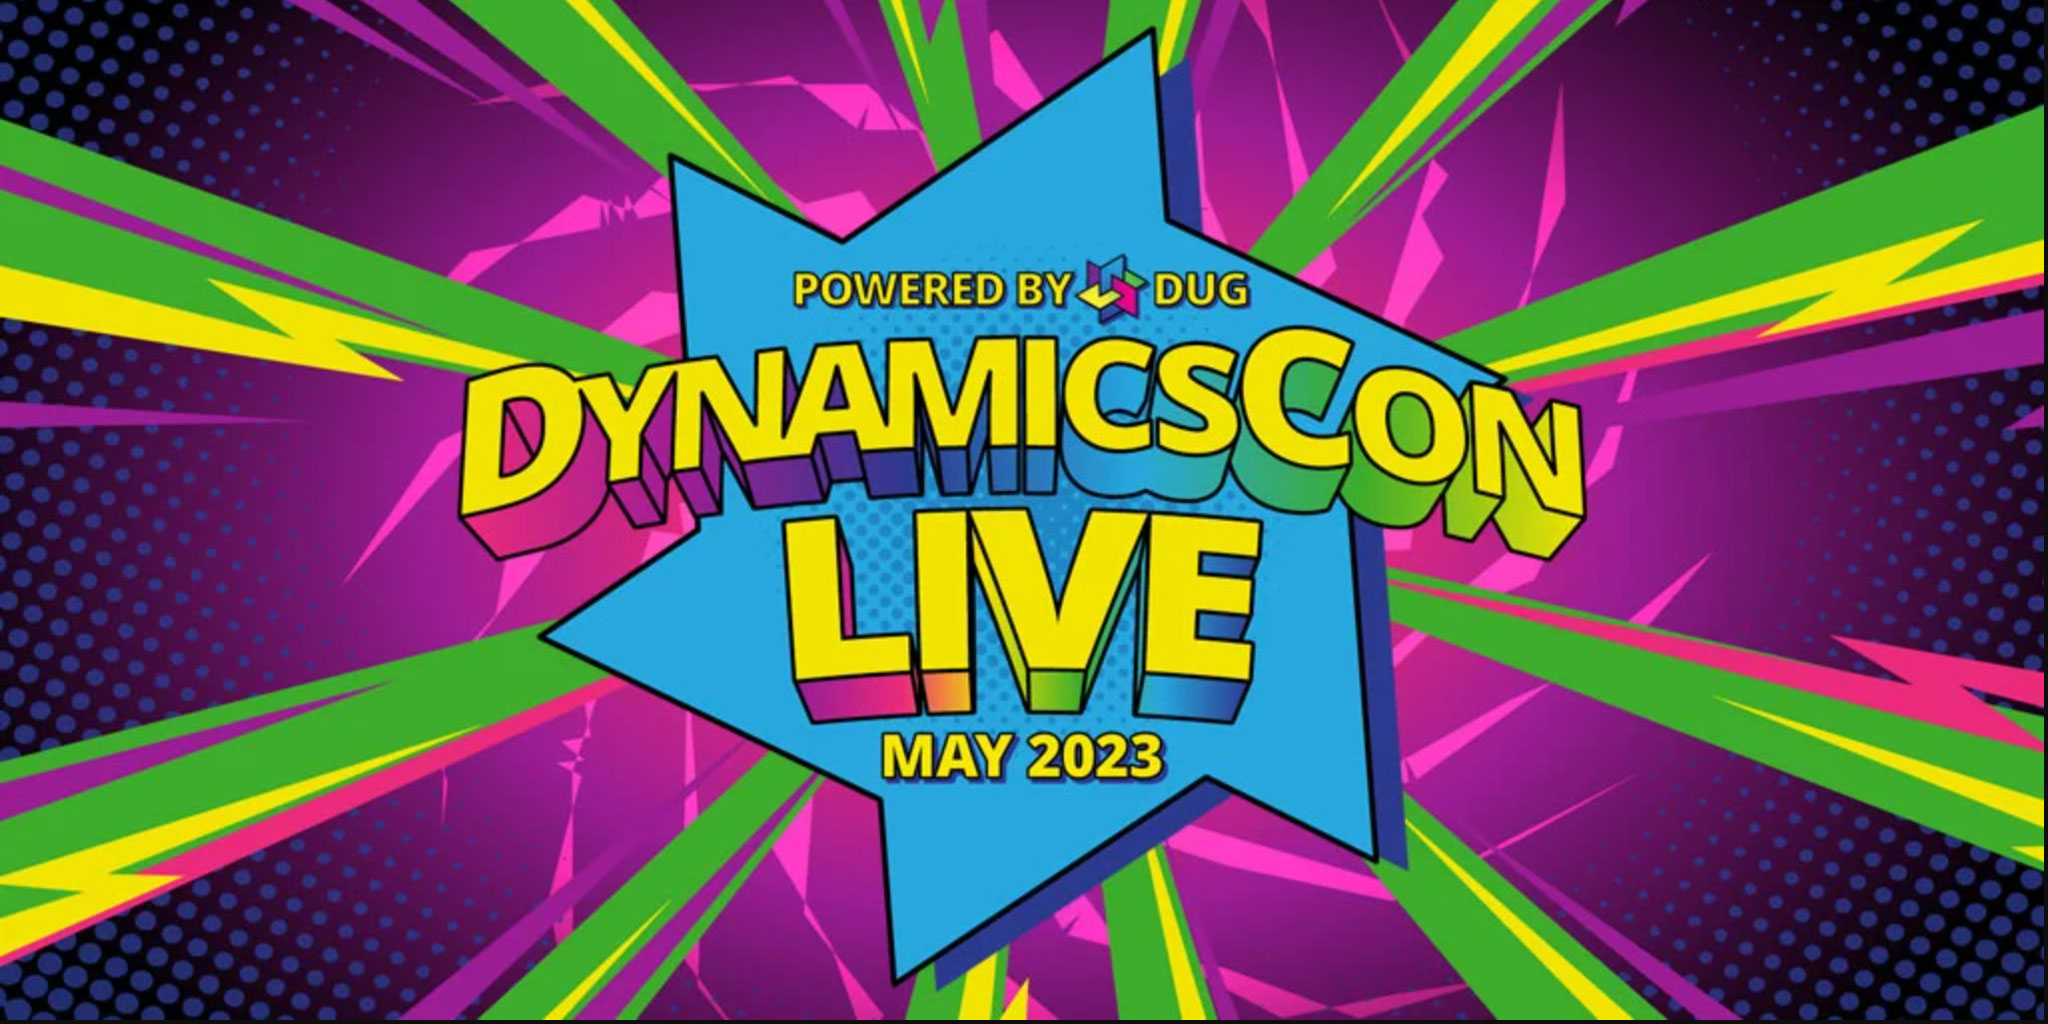 DynamicsCon LIVE 2023